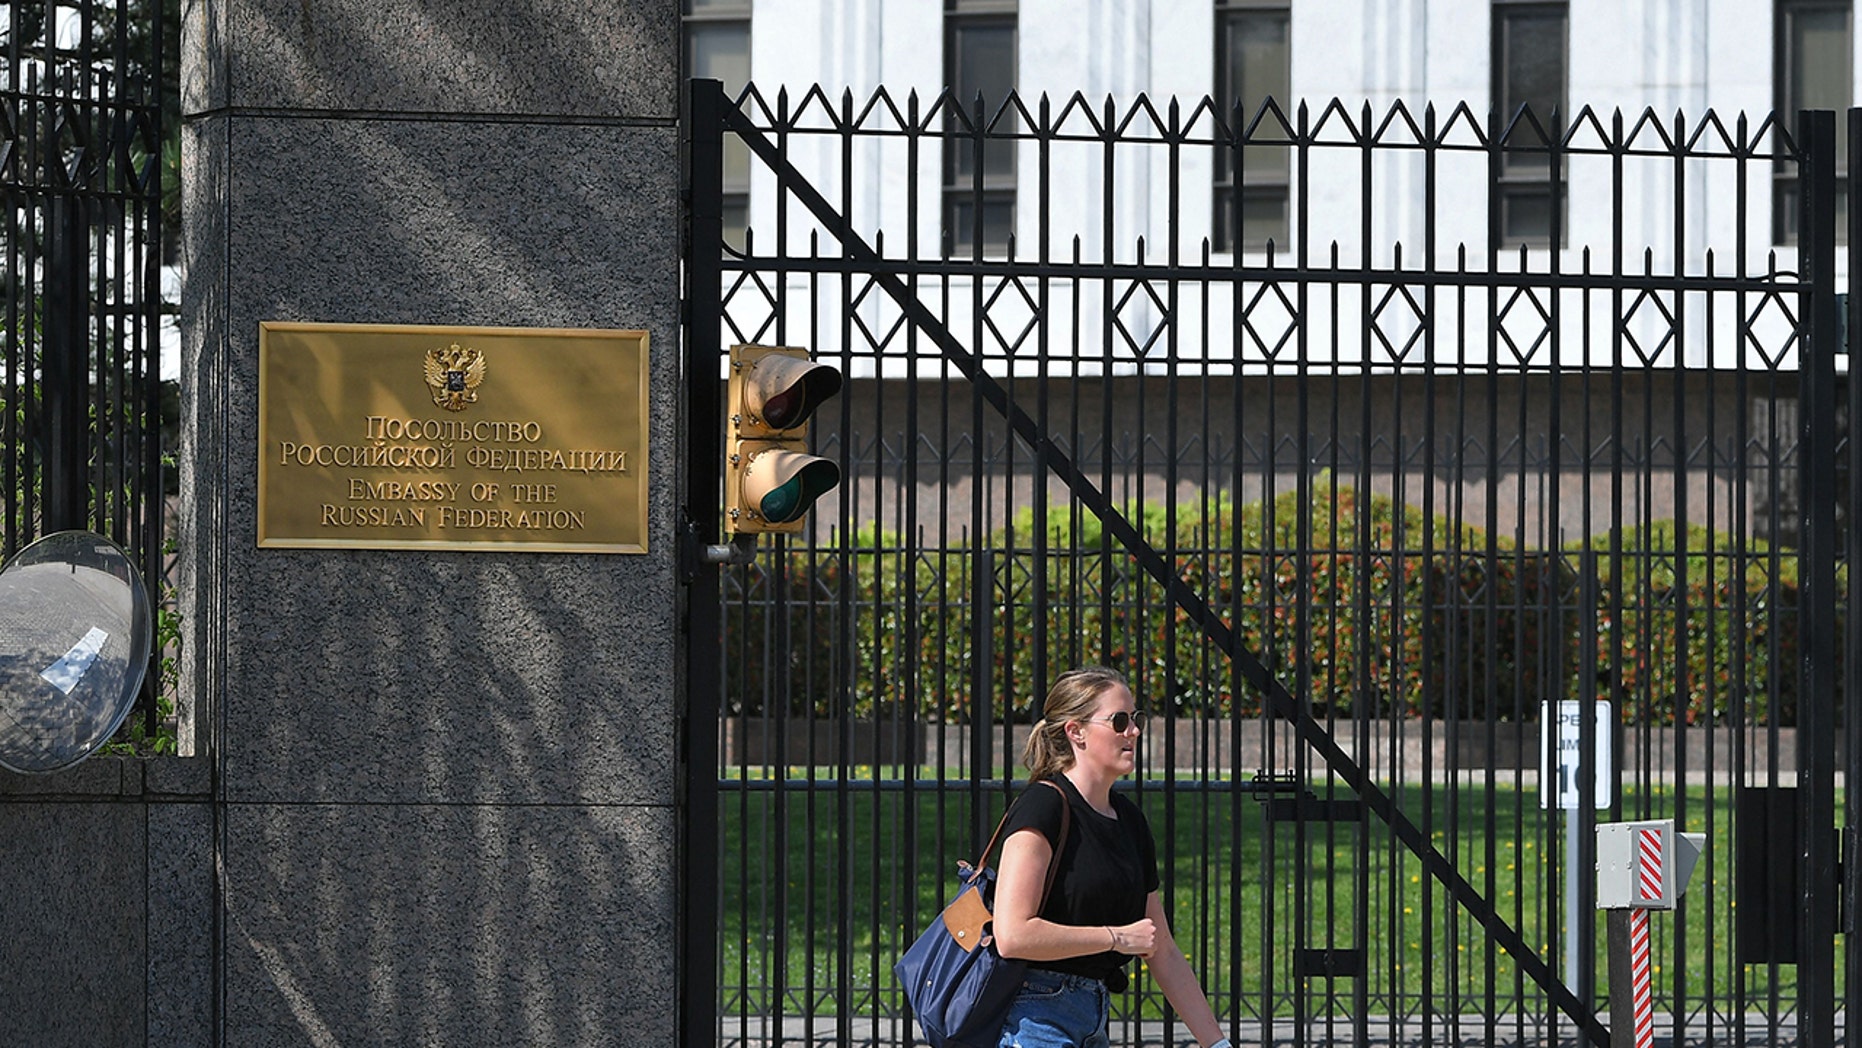 Fuerte explosión cerca de la embajada rusa en Washington estremeció a los vecinos